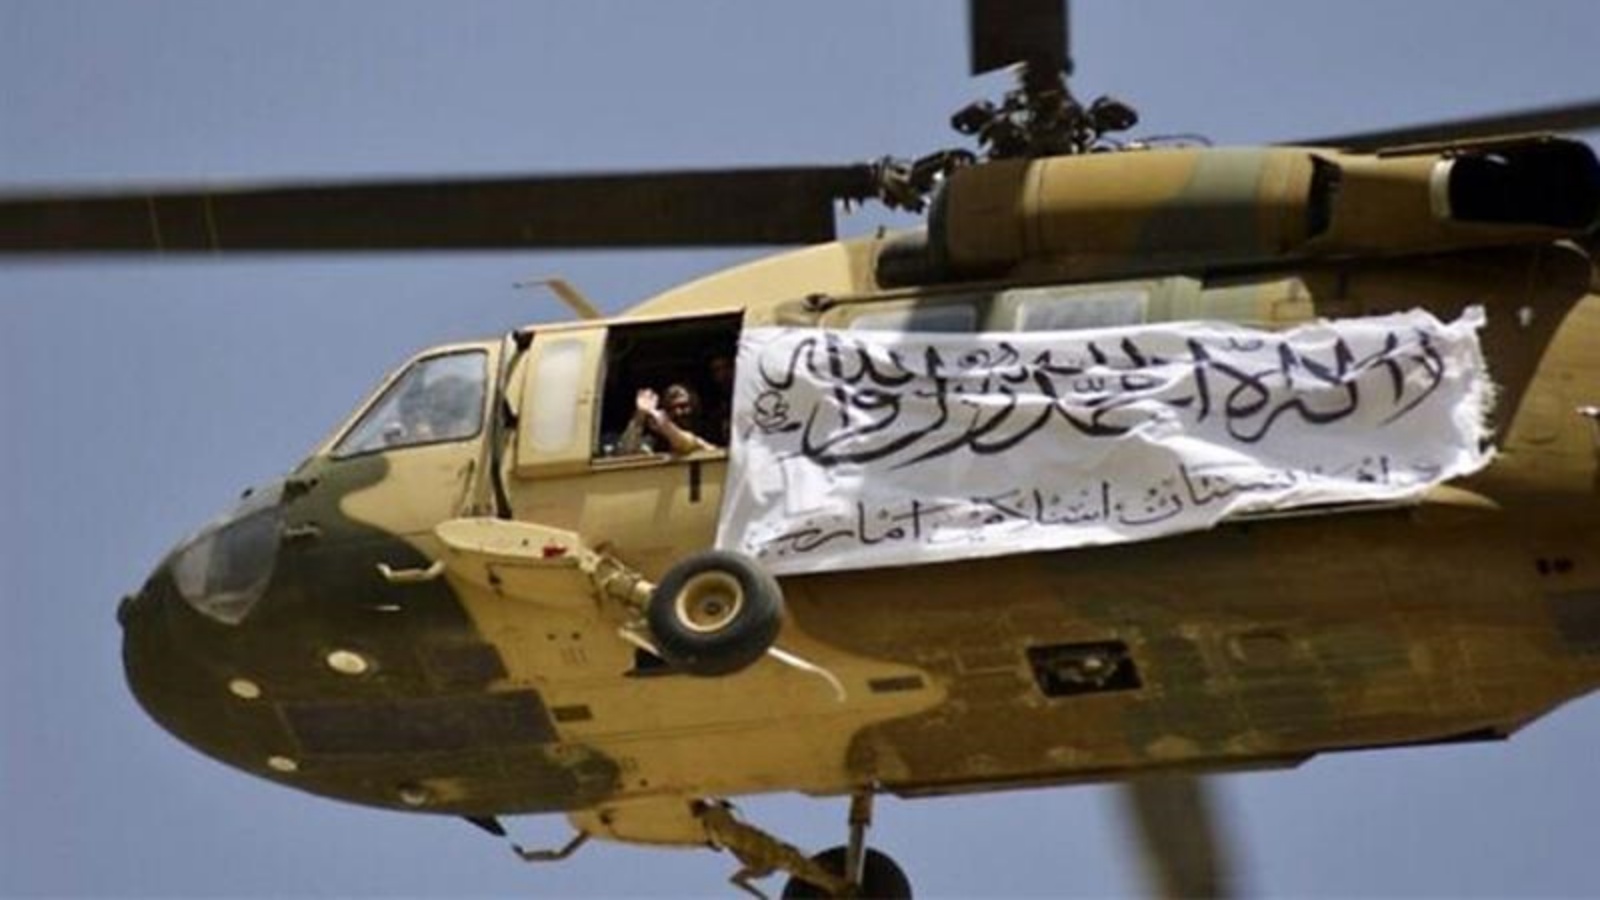 مروحية أميركية الصنع تحطمت خلال تدريبات لحركة طالبان السبت في كابول